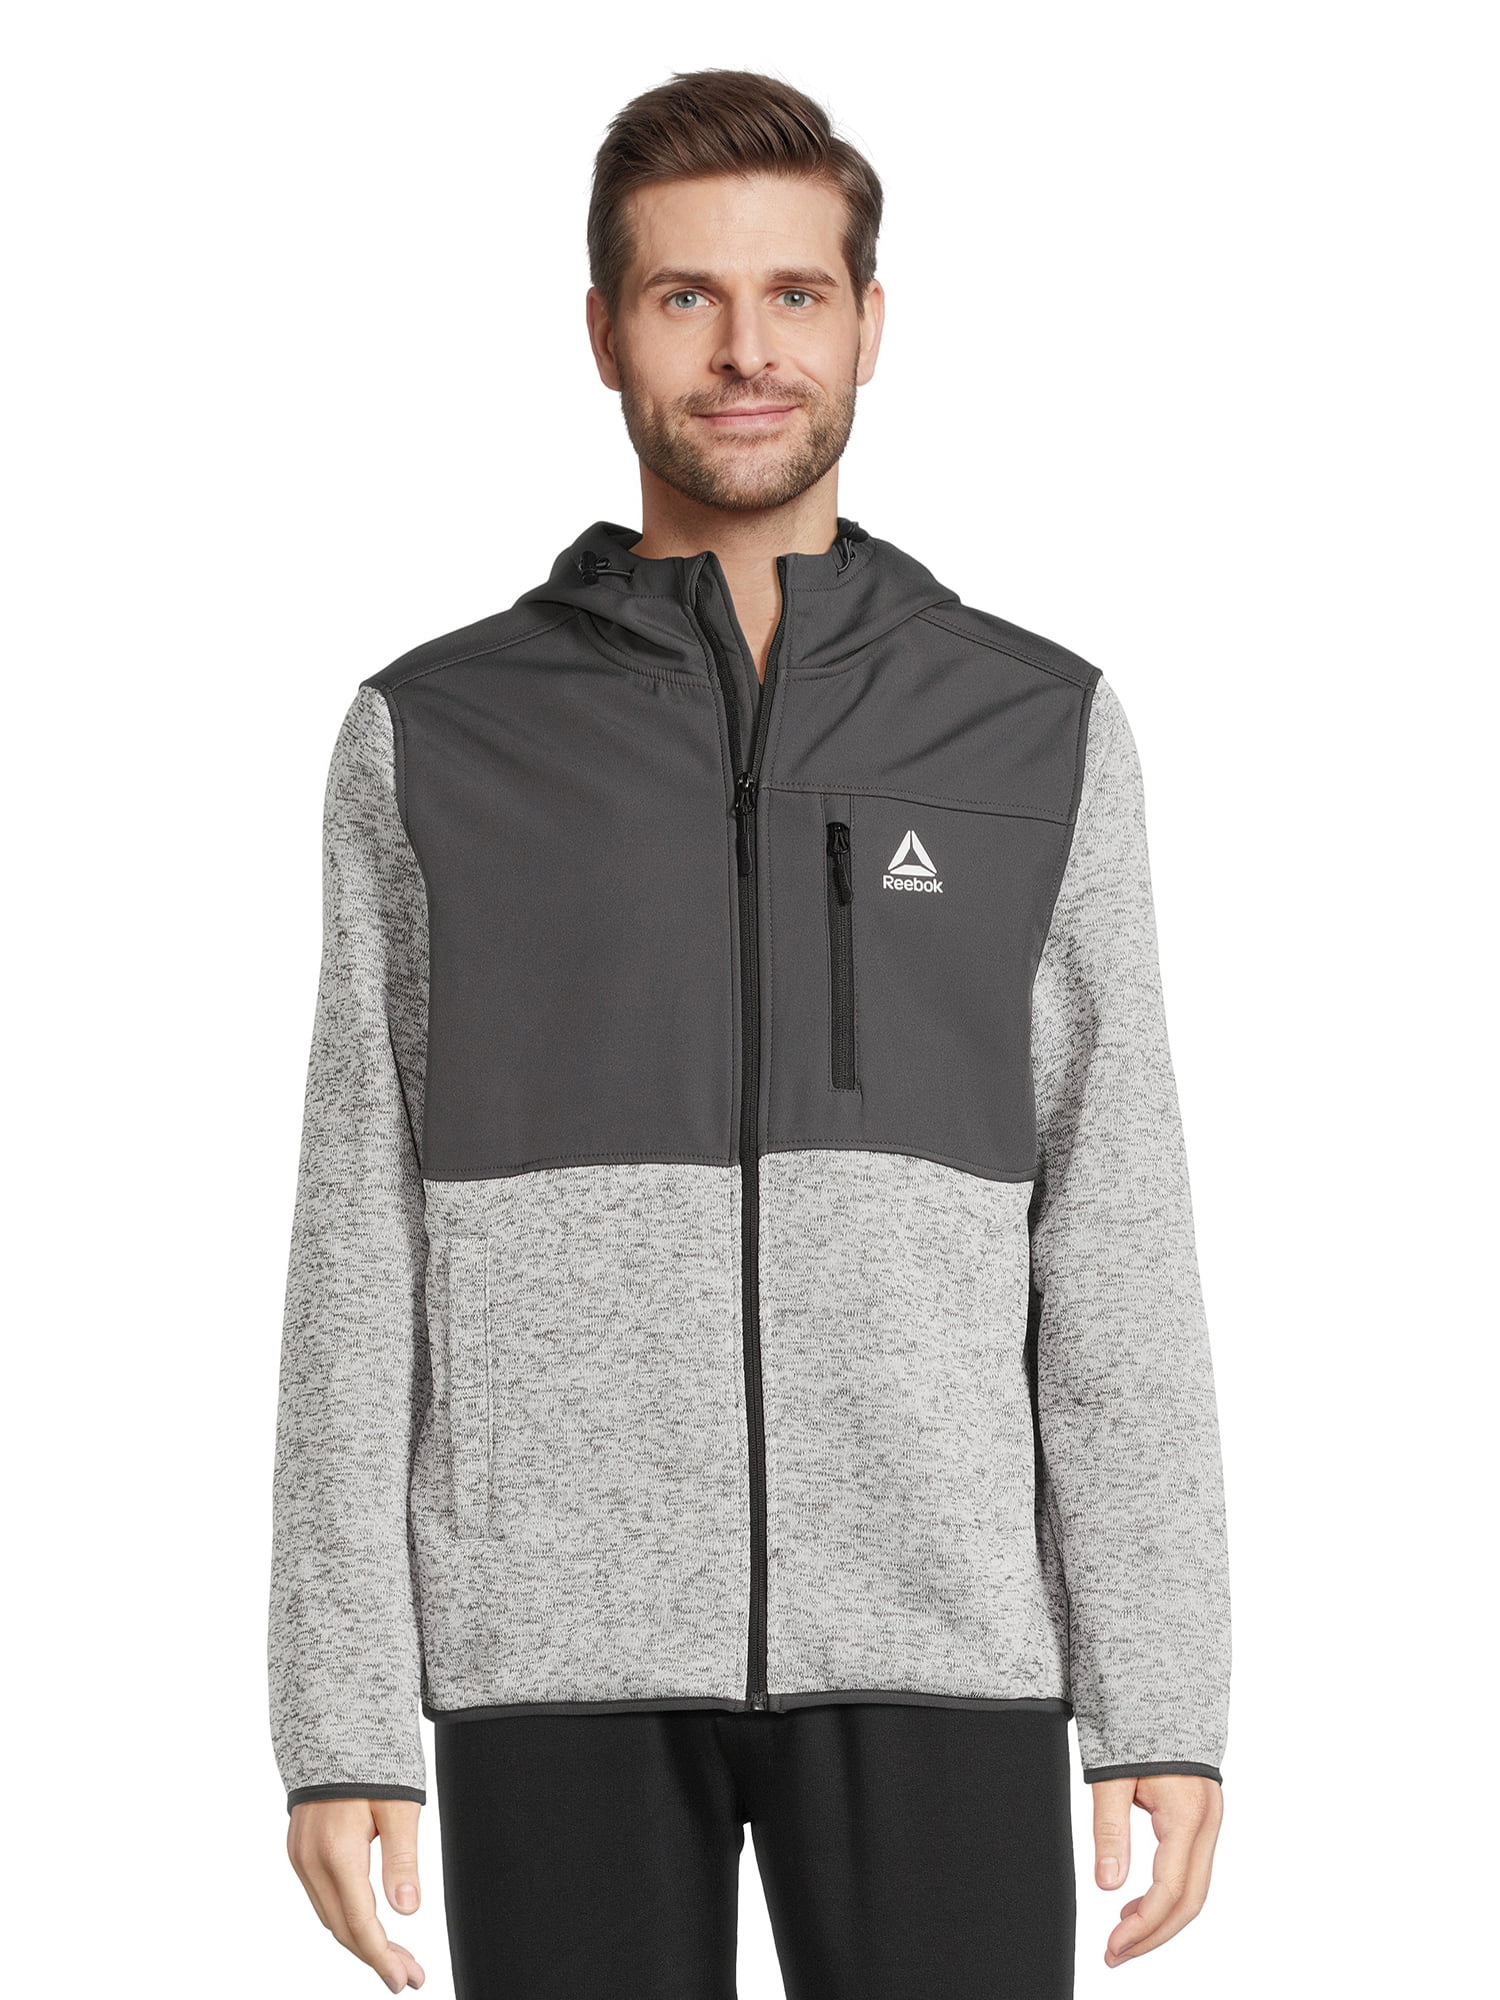 Reebok Men’s Hooded Sweater Fleece Jacket, Sizes M-2XL - Walmart.com